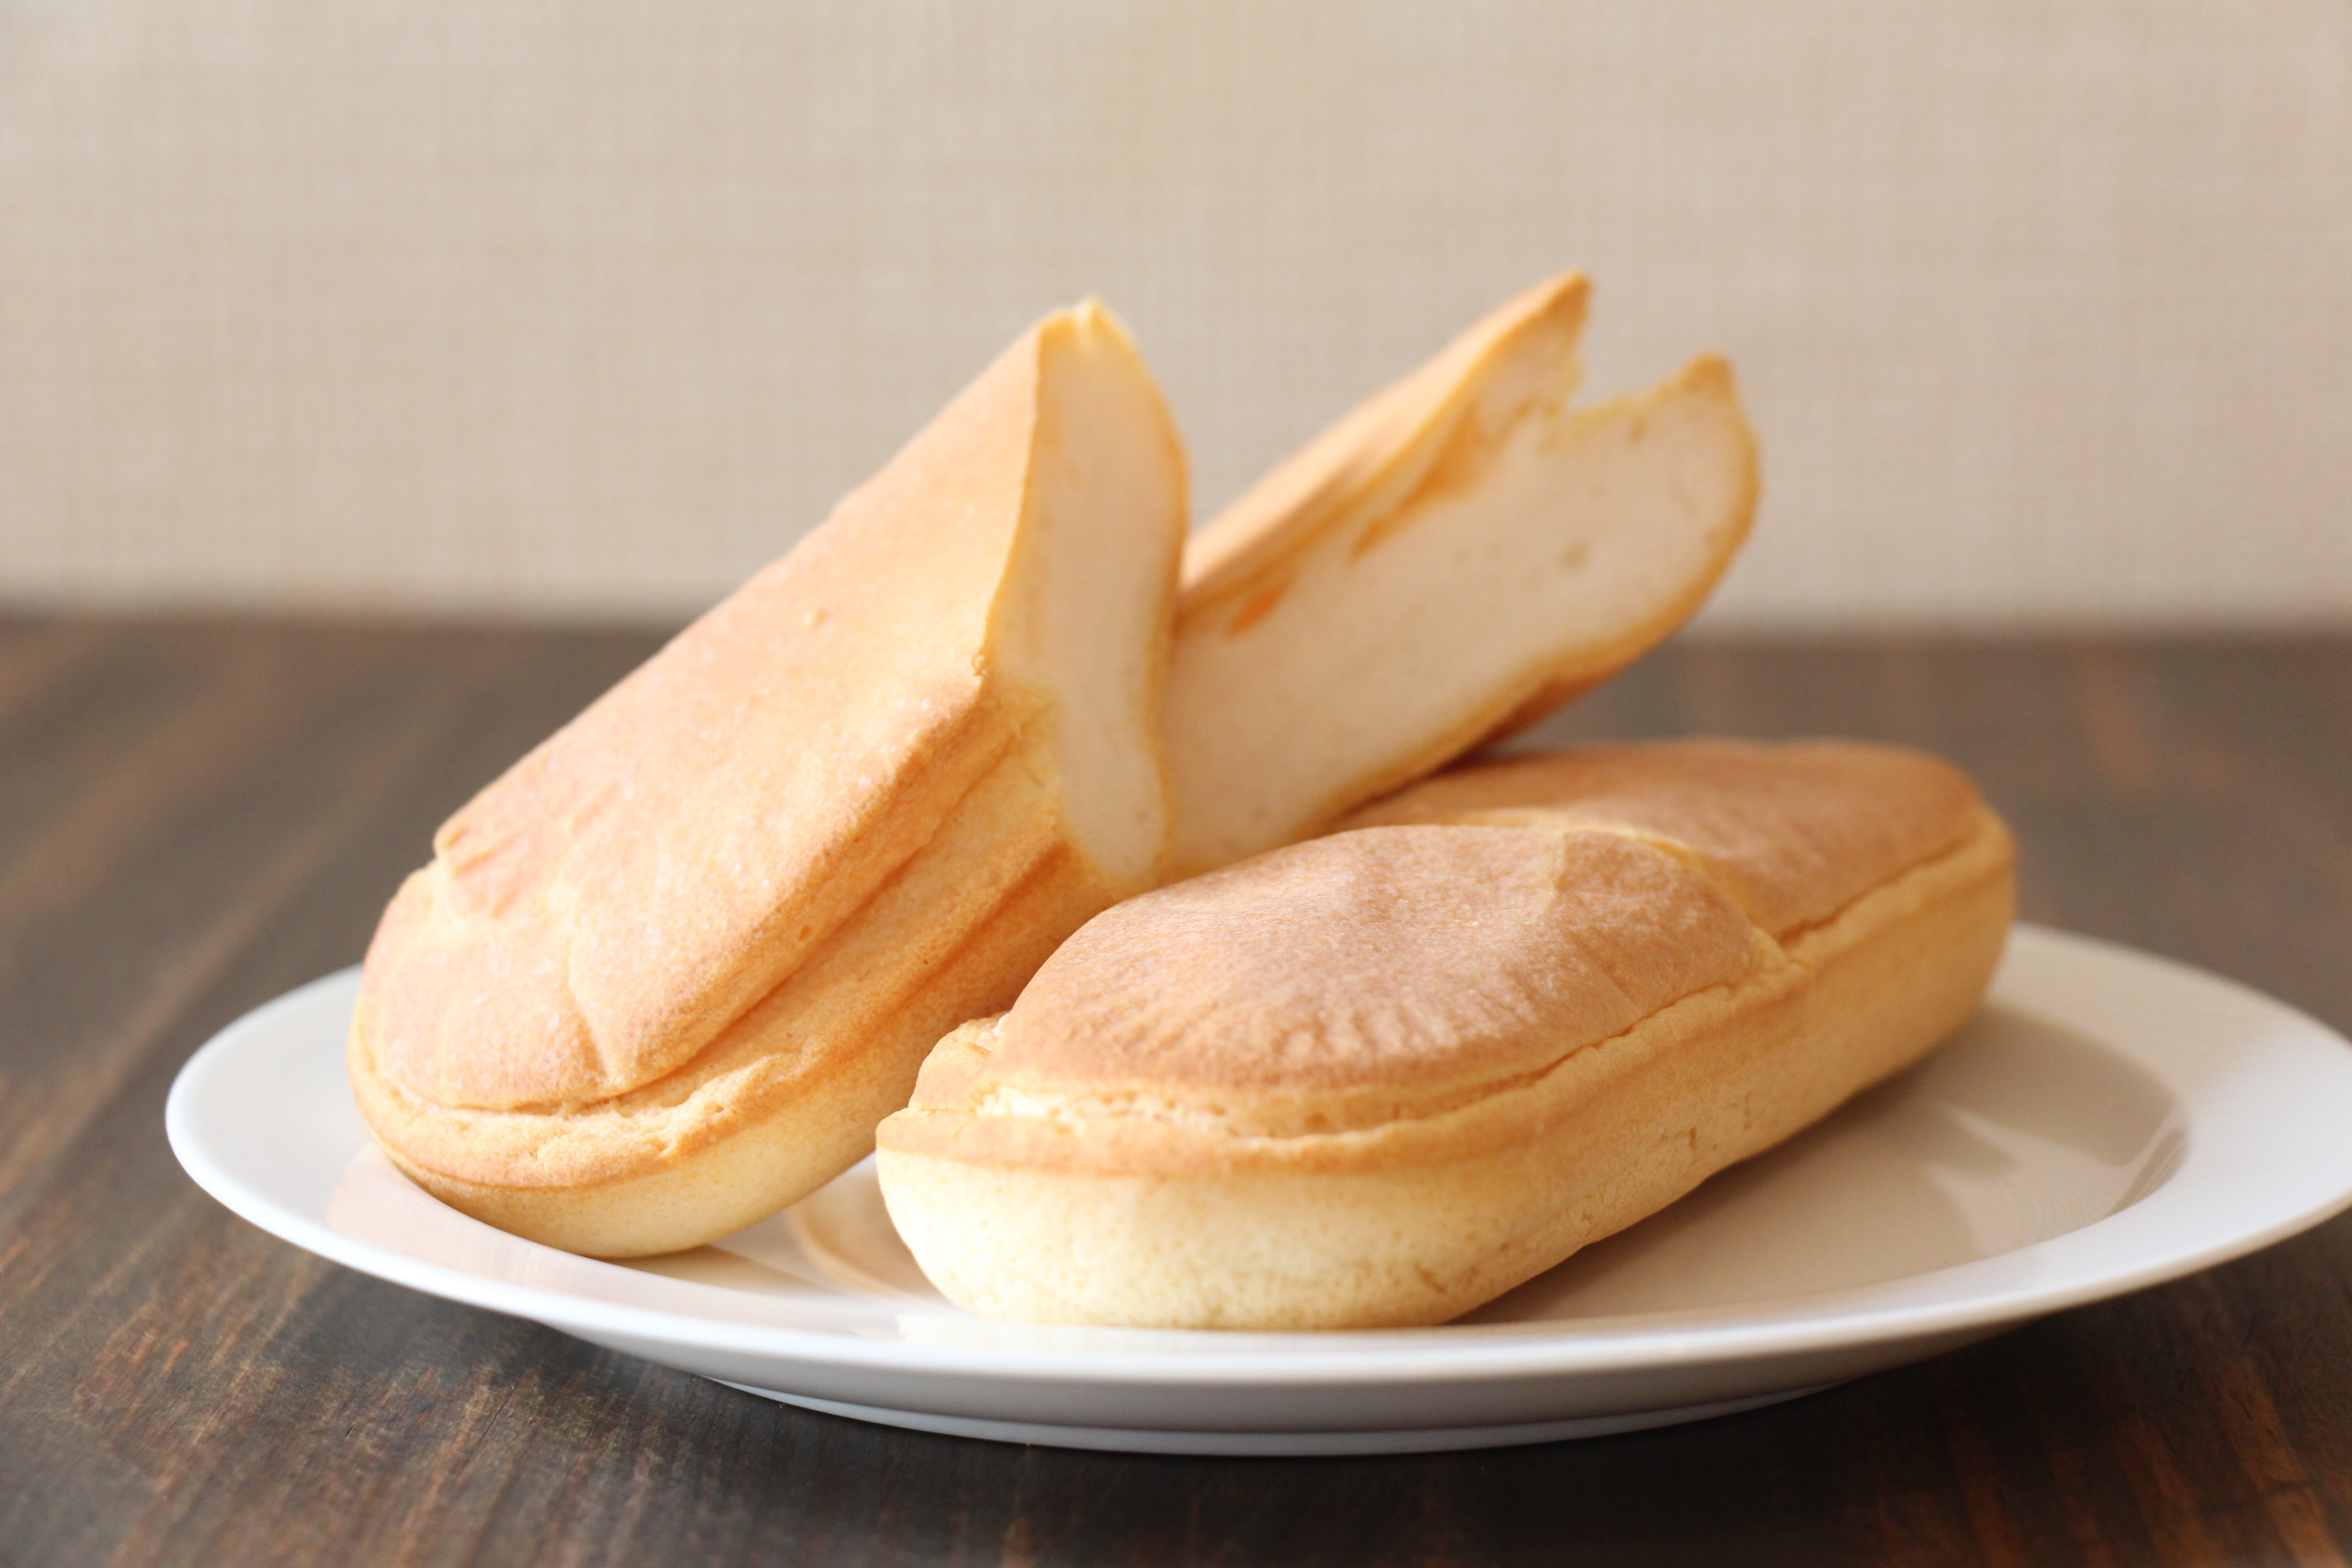 【冷凍】グルテンフリーの米粉パン詰め合わせセット